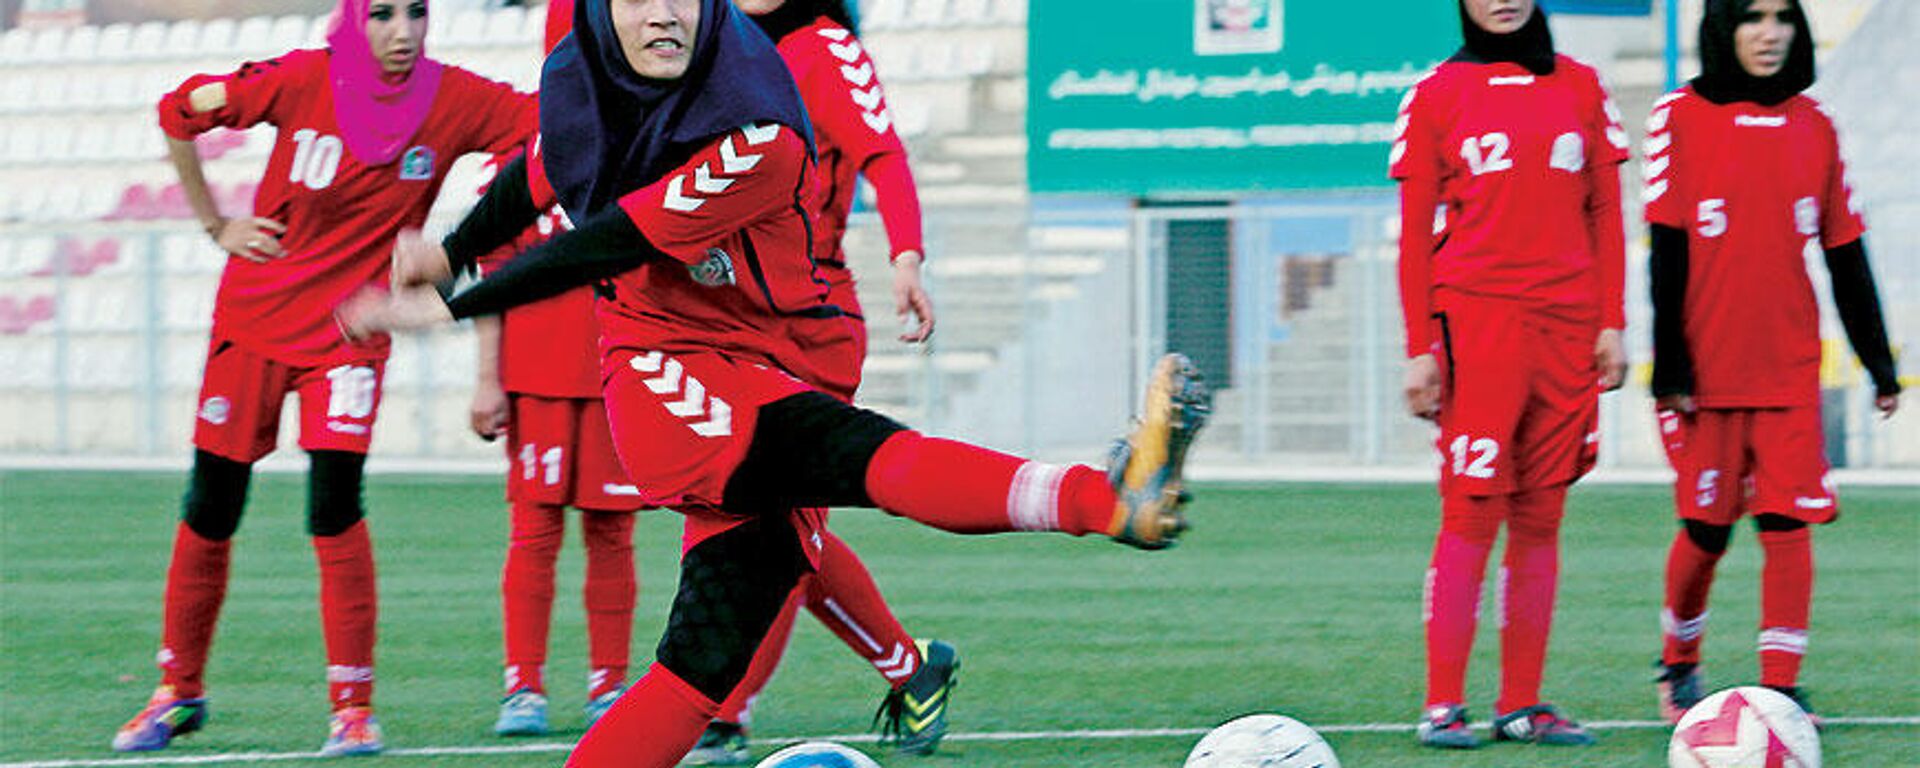 Afganistan kadın futbol takımı - Sputnik Türkiye, 1920, 19.11.2021